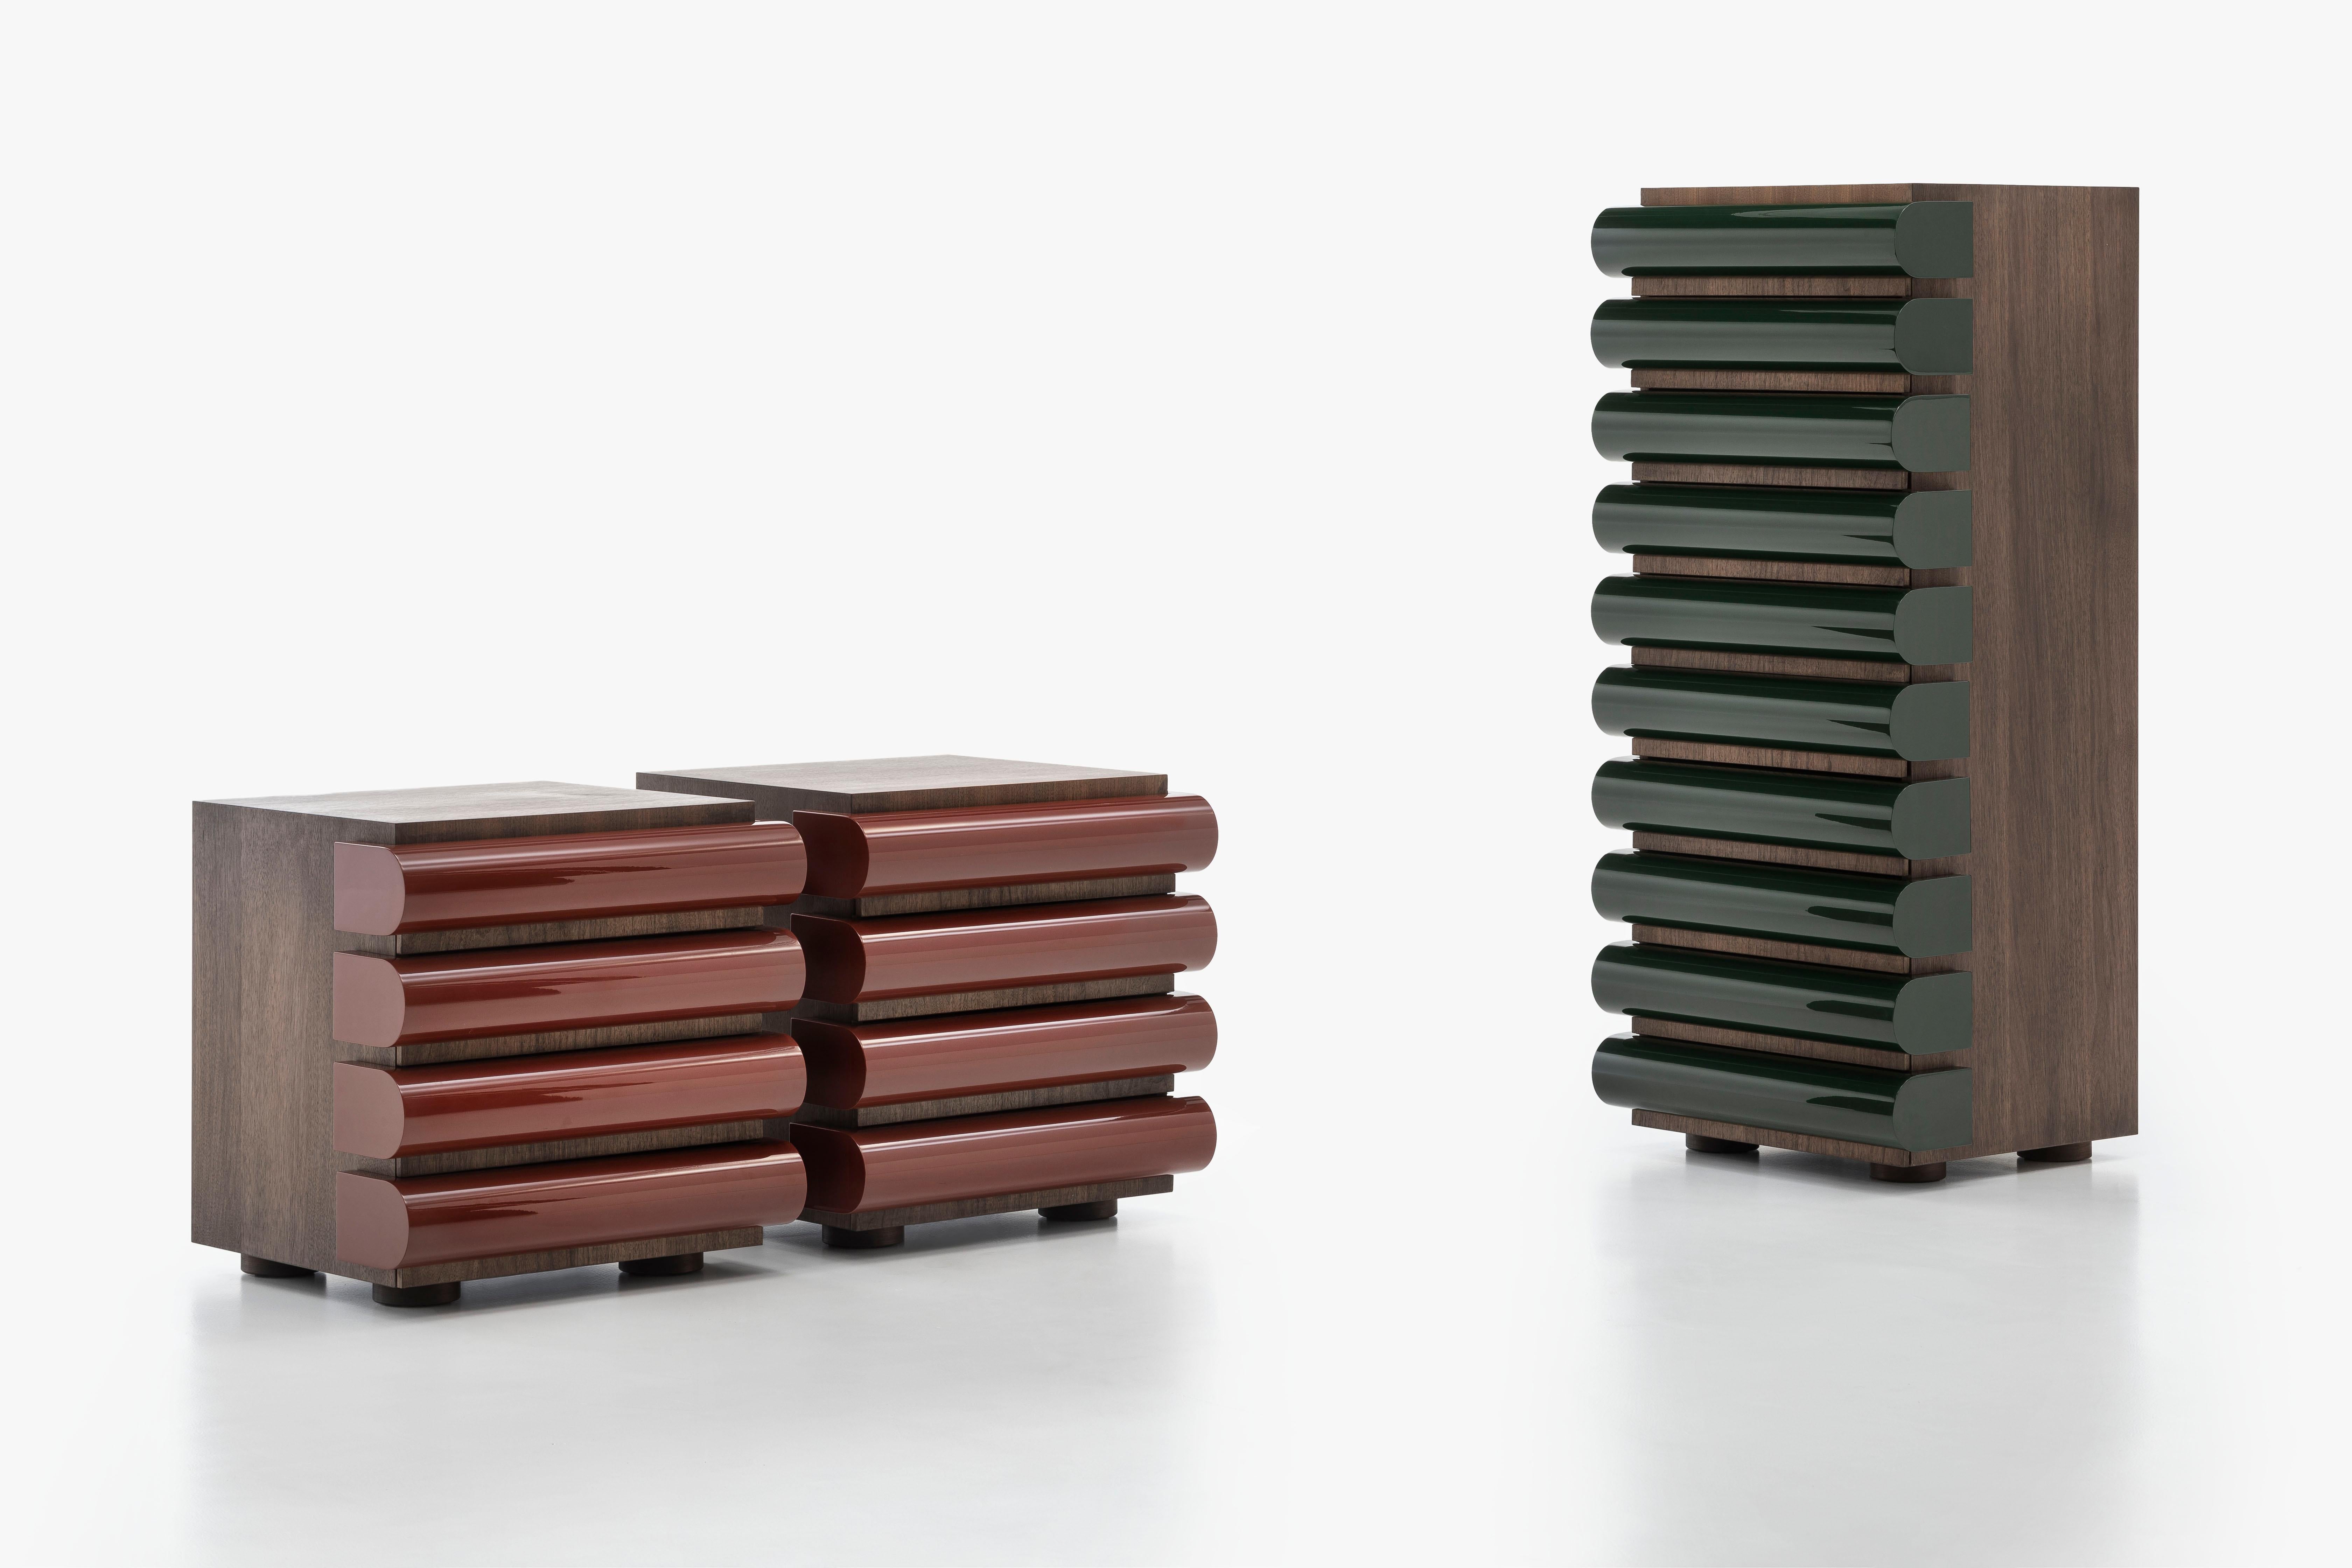 Die Collection'S wird durch eine Version mit vier Schubladen und moderneren Oberflächen ergänzt.

1994 entwarf Nanda Vigo für Acerbis Storet einen Schrank mit zehn Schubladen. Dank seiner schlafzimmerähnlichen Oberflächen wurde er Teil der Bed Side